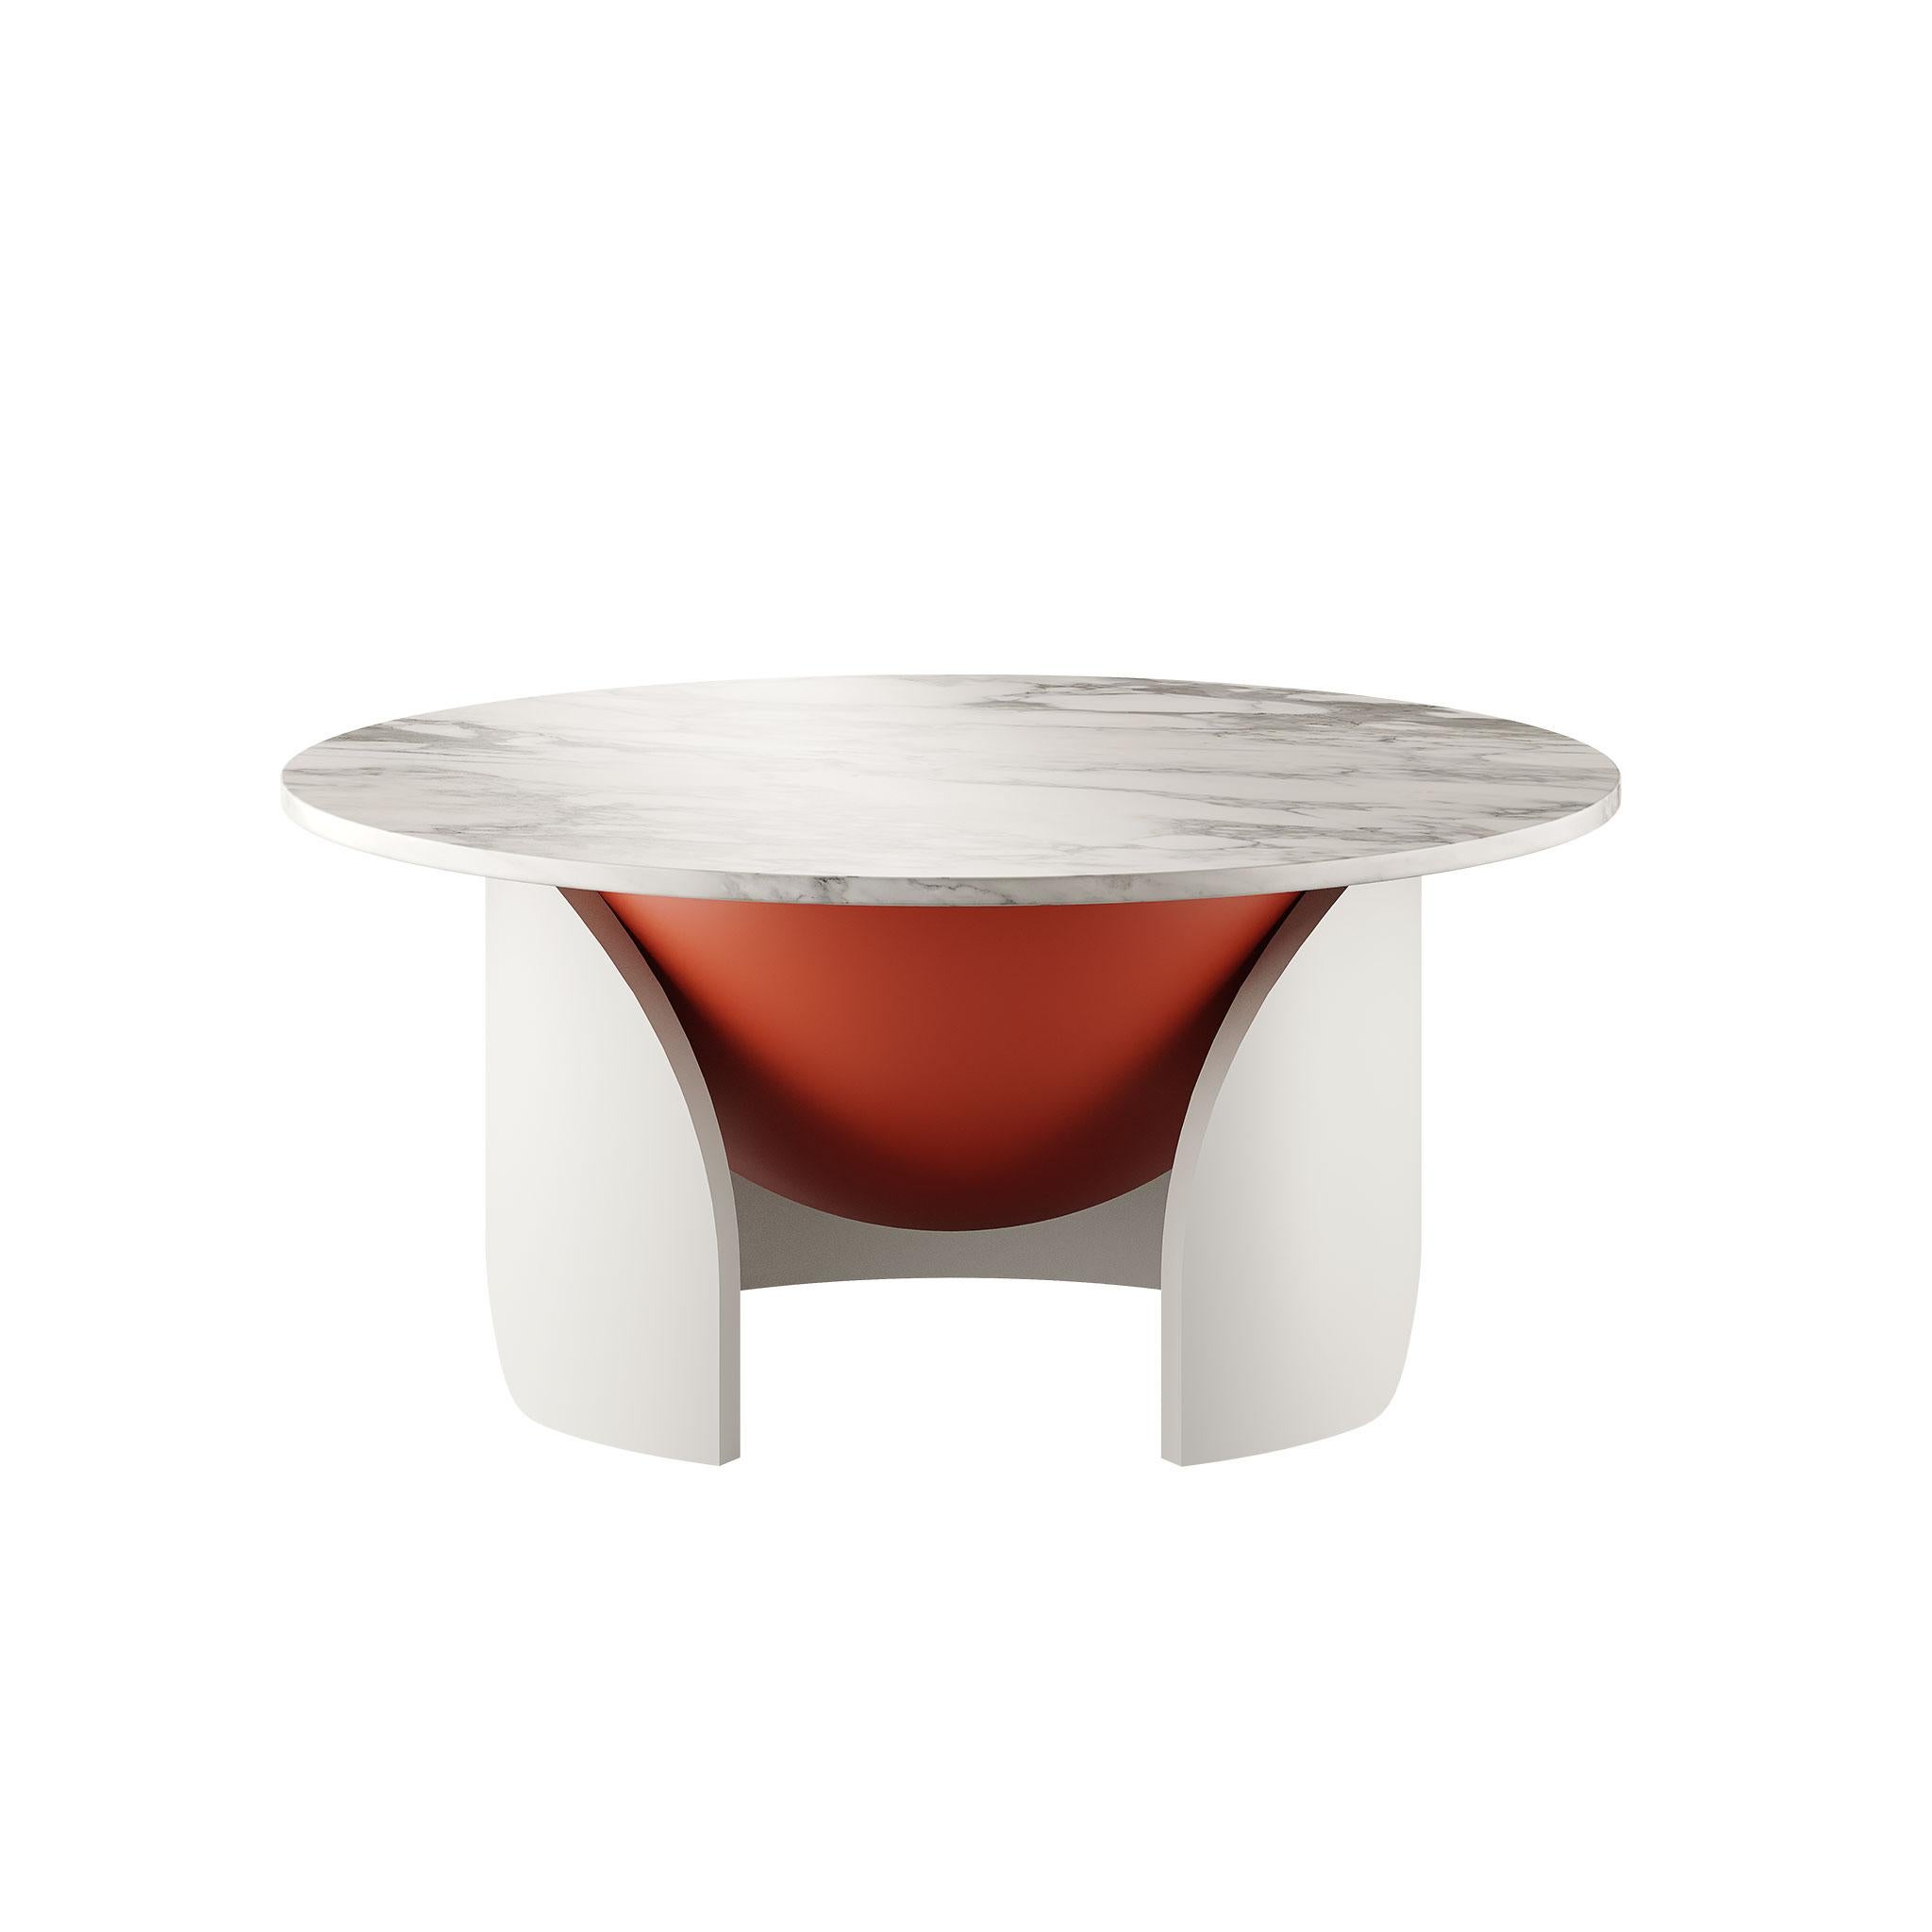 Entdecken Sie den Inbegriff von modernem Luxus mit unserem Contemporary Center Table mit exquisitem weißem Calacatta-Marmor und einer markanten orangefarbenen runden Kugel in seinem Inneren.
Dieser sorgfältig gefertigte Tisch verbindet nahtlos